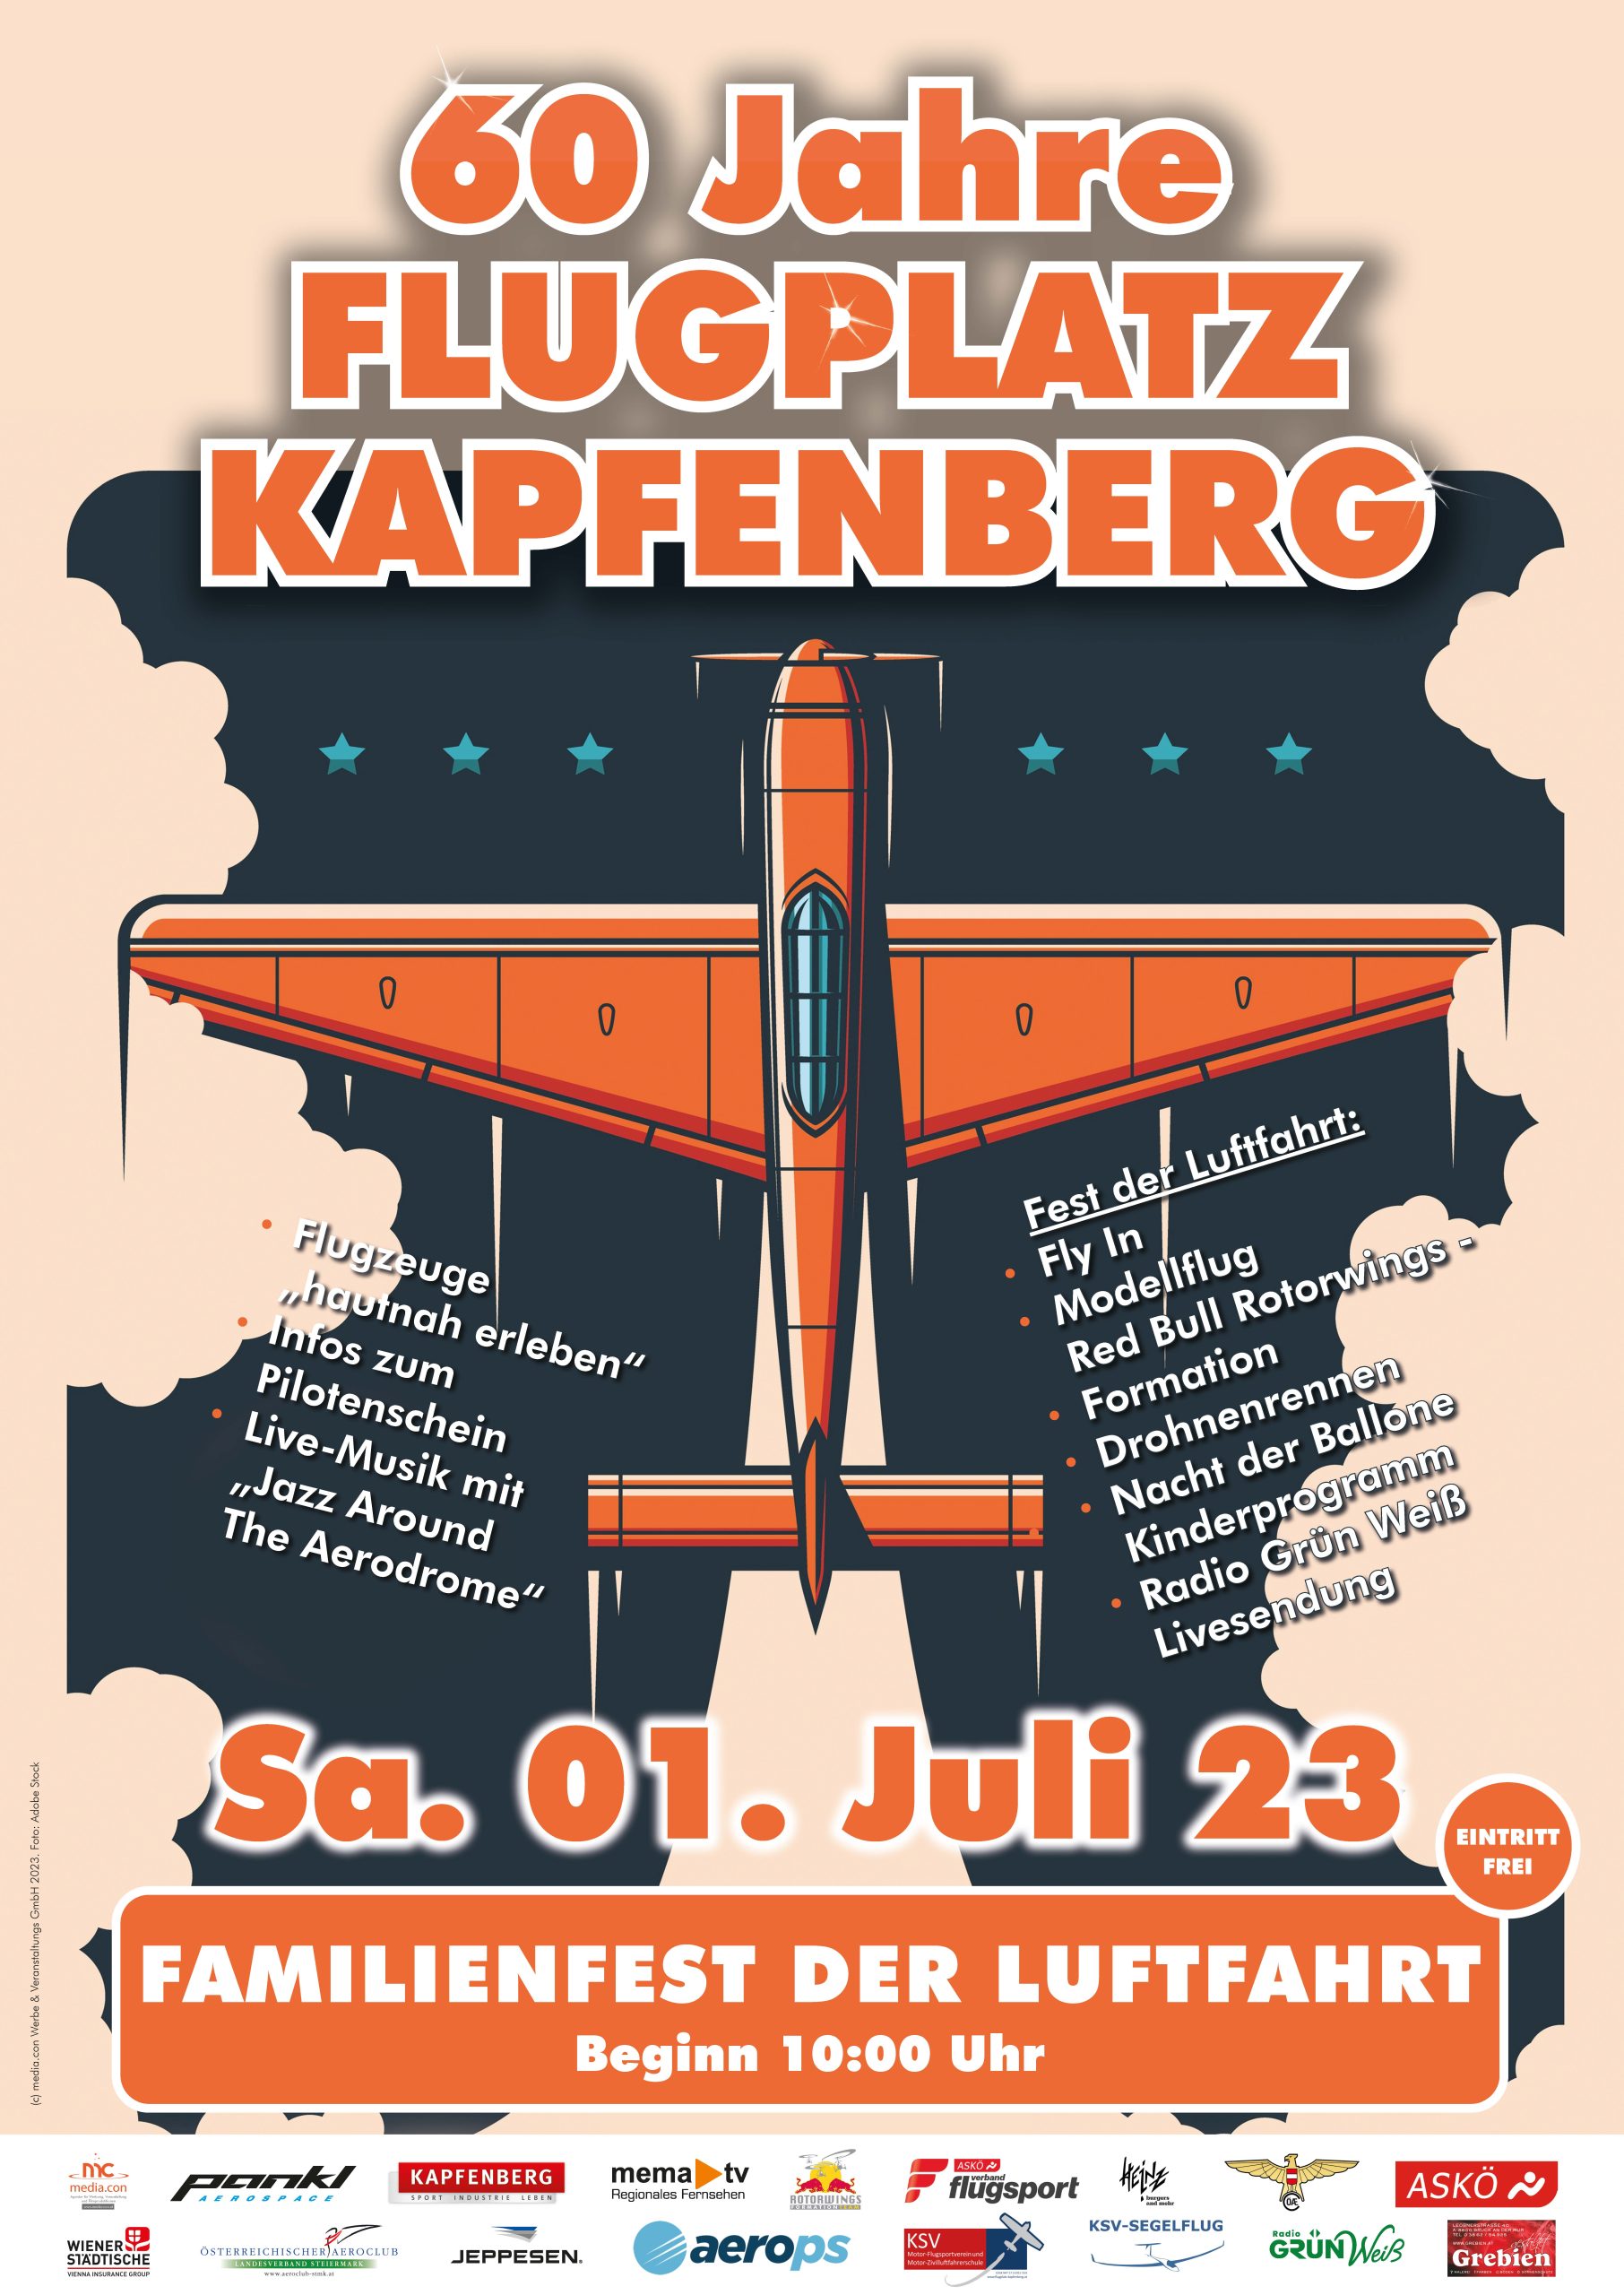 60 Jahre Flugplatz Kapfenberg